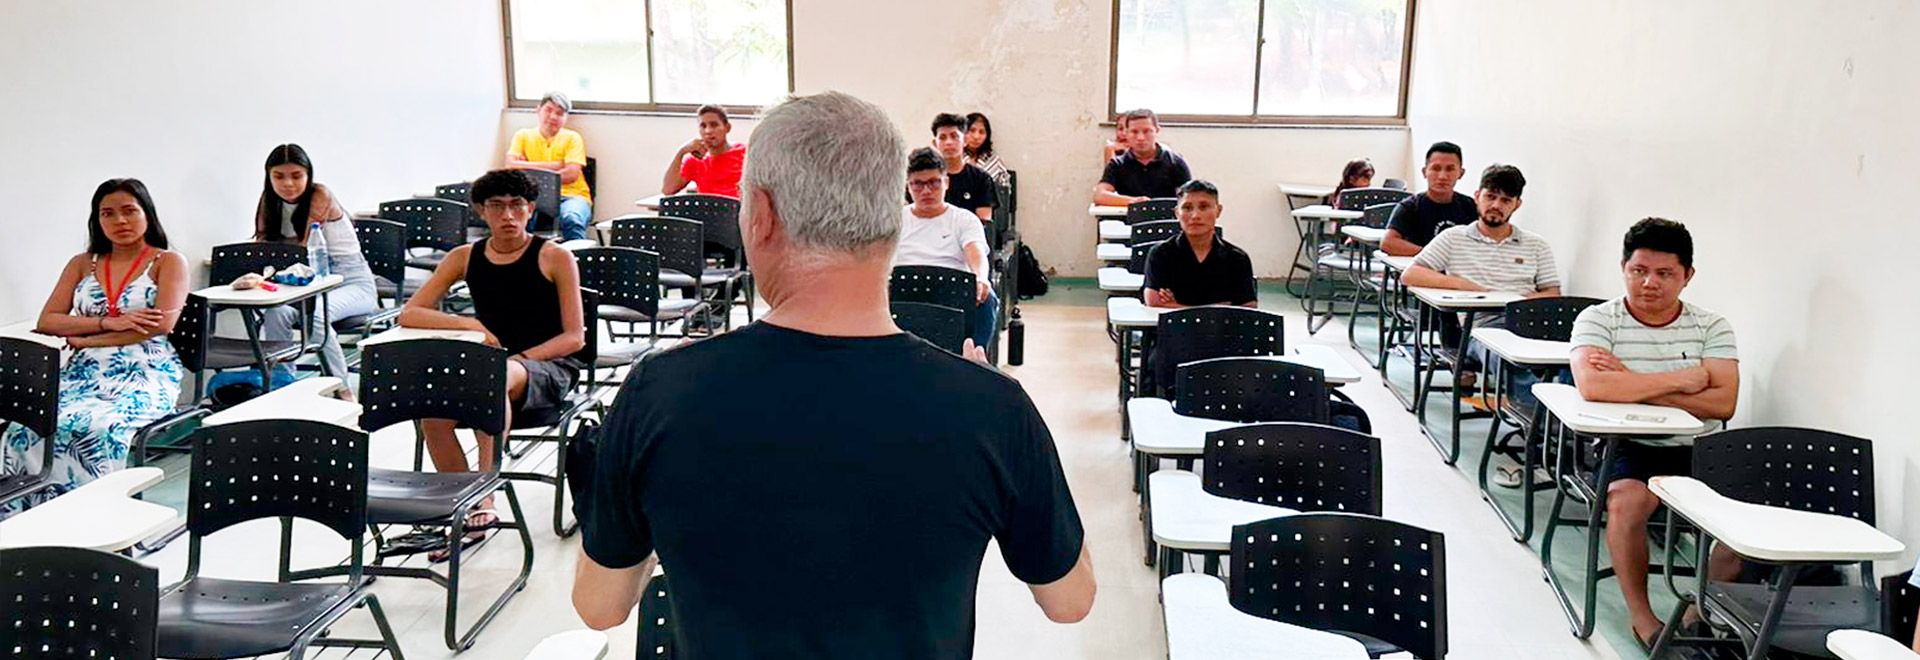 Pela primeira vez, a Unicamp realizou a prova no Pará, na cidade de Santarém